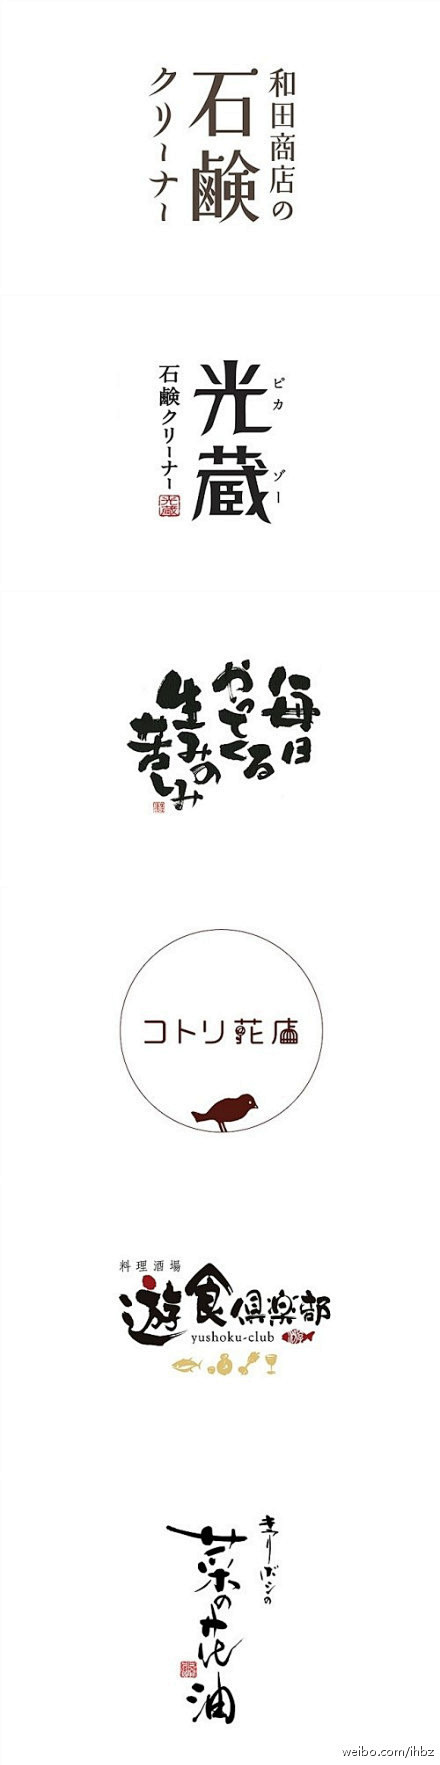 日本字体设计BY HANY